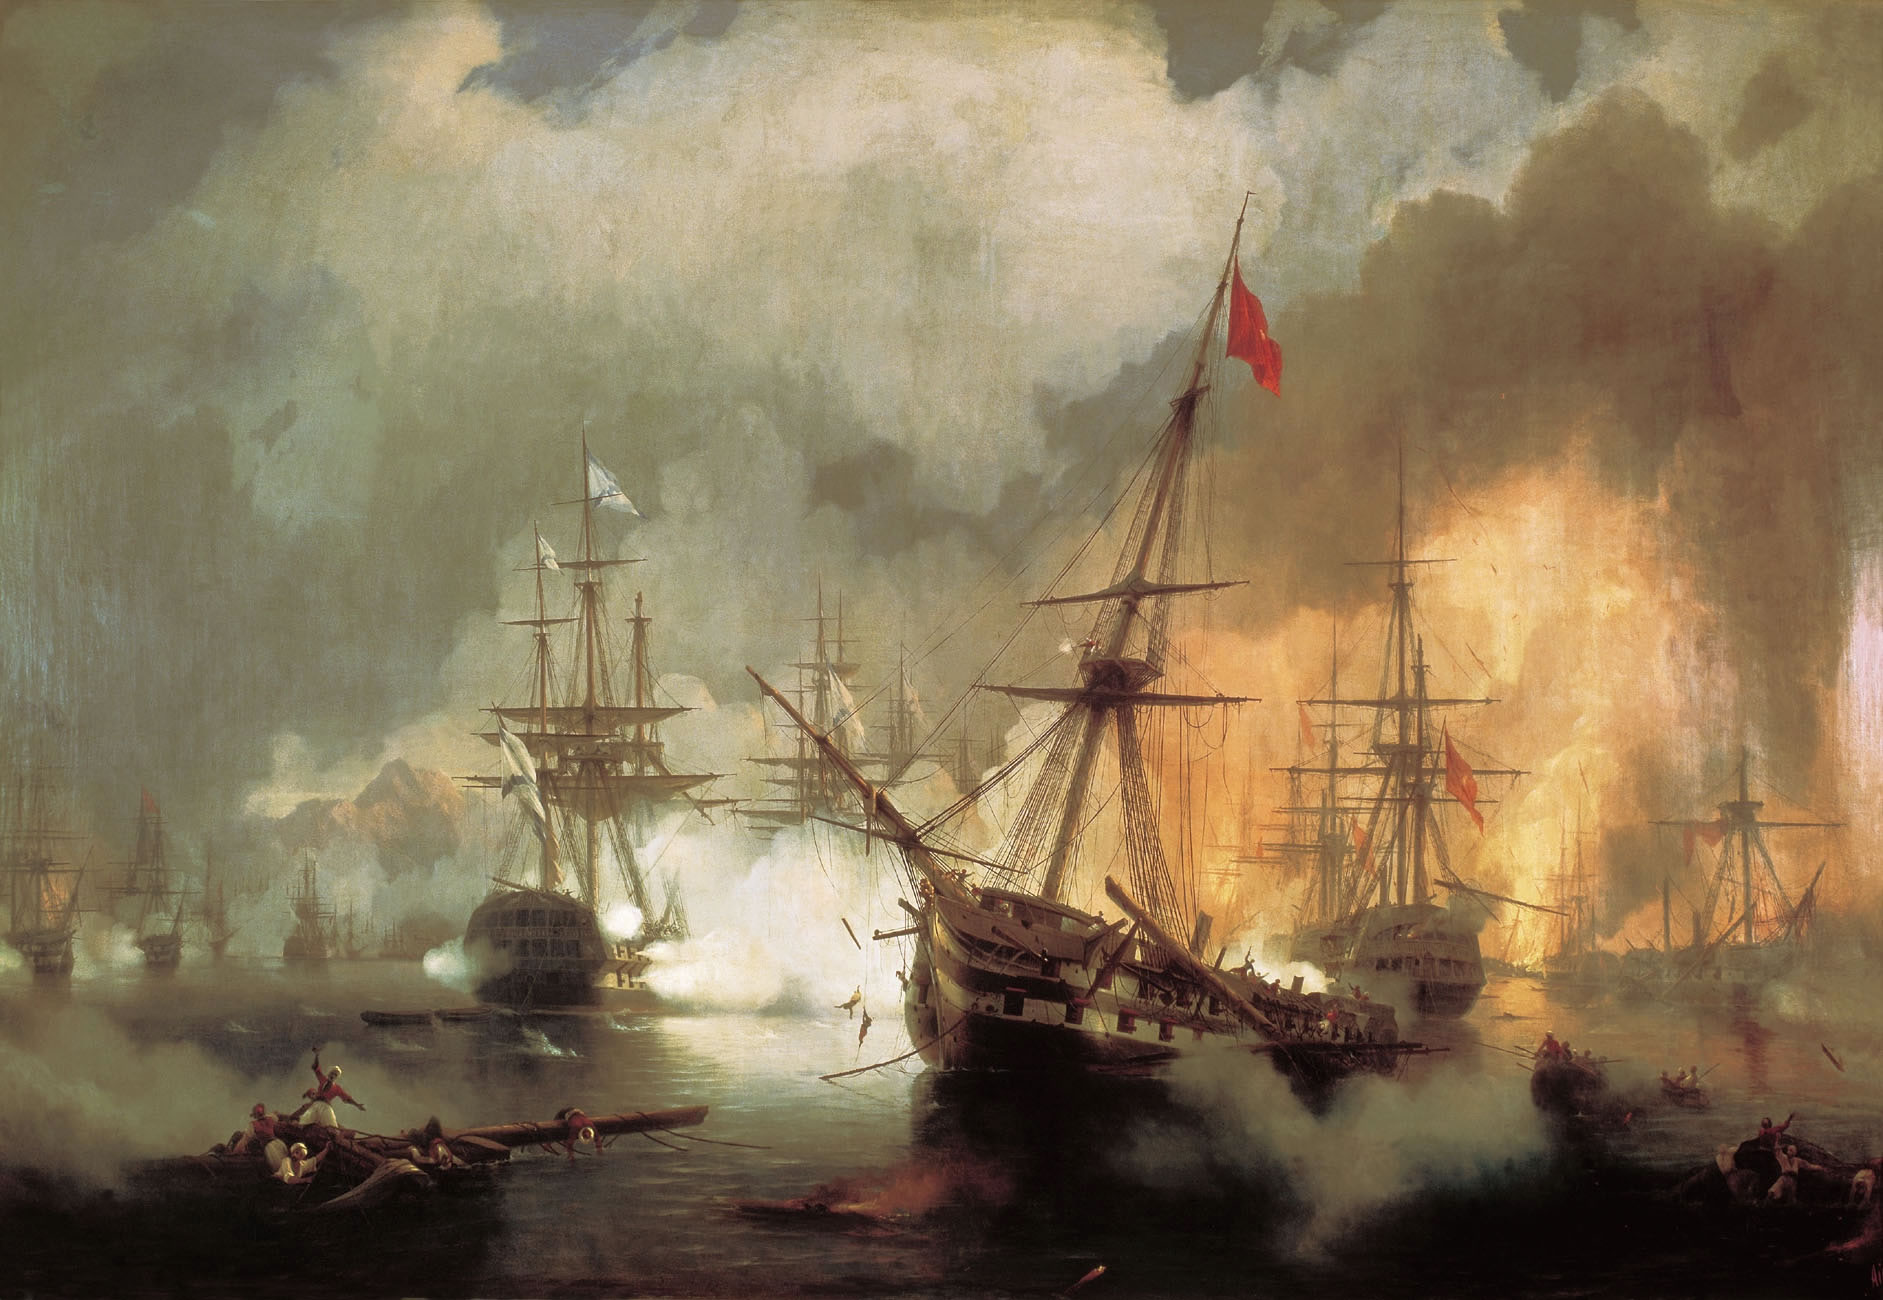 Иван Айвазовский. Морское сражение при Наварине 2 октября 1827 года. 1846.